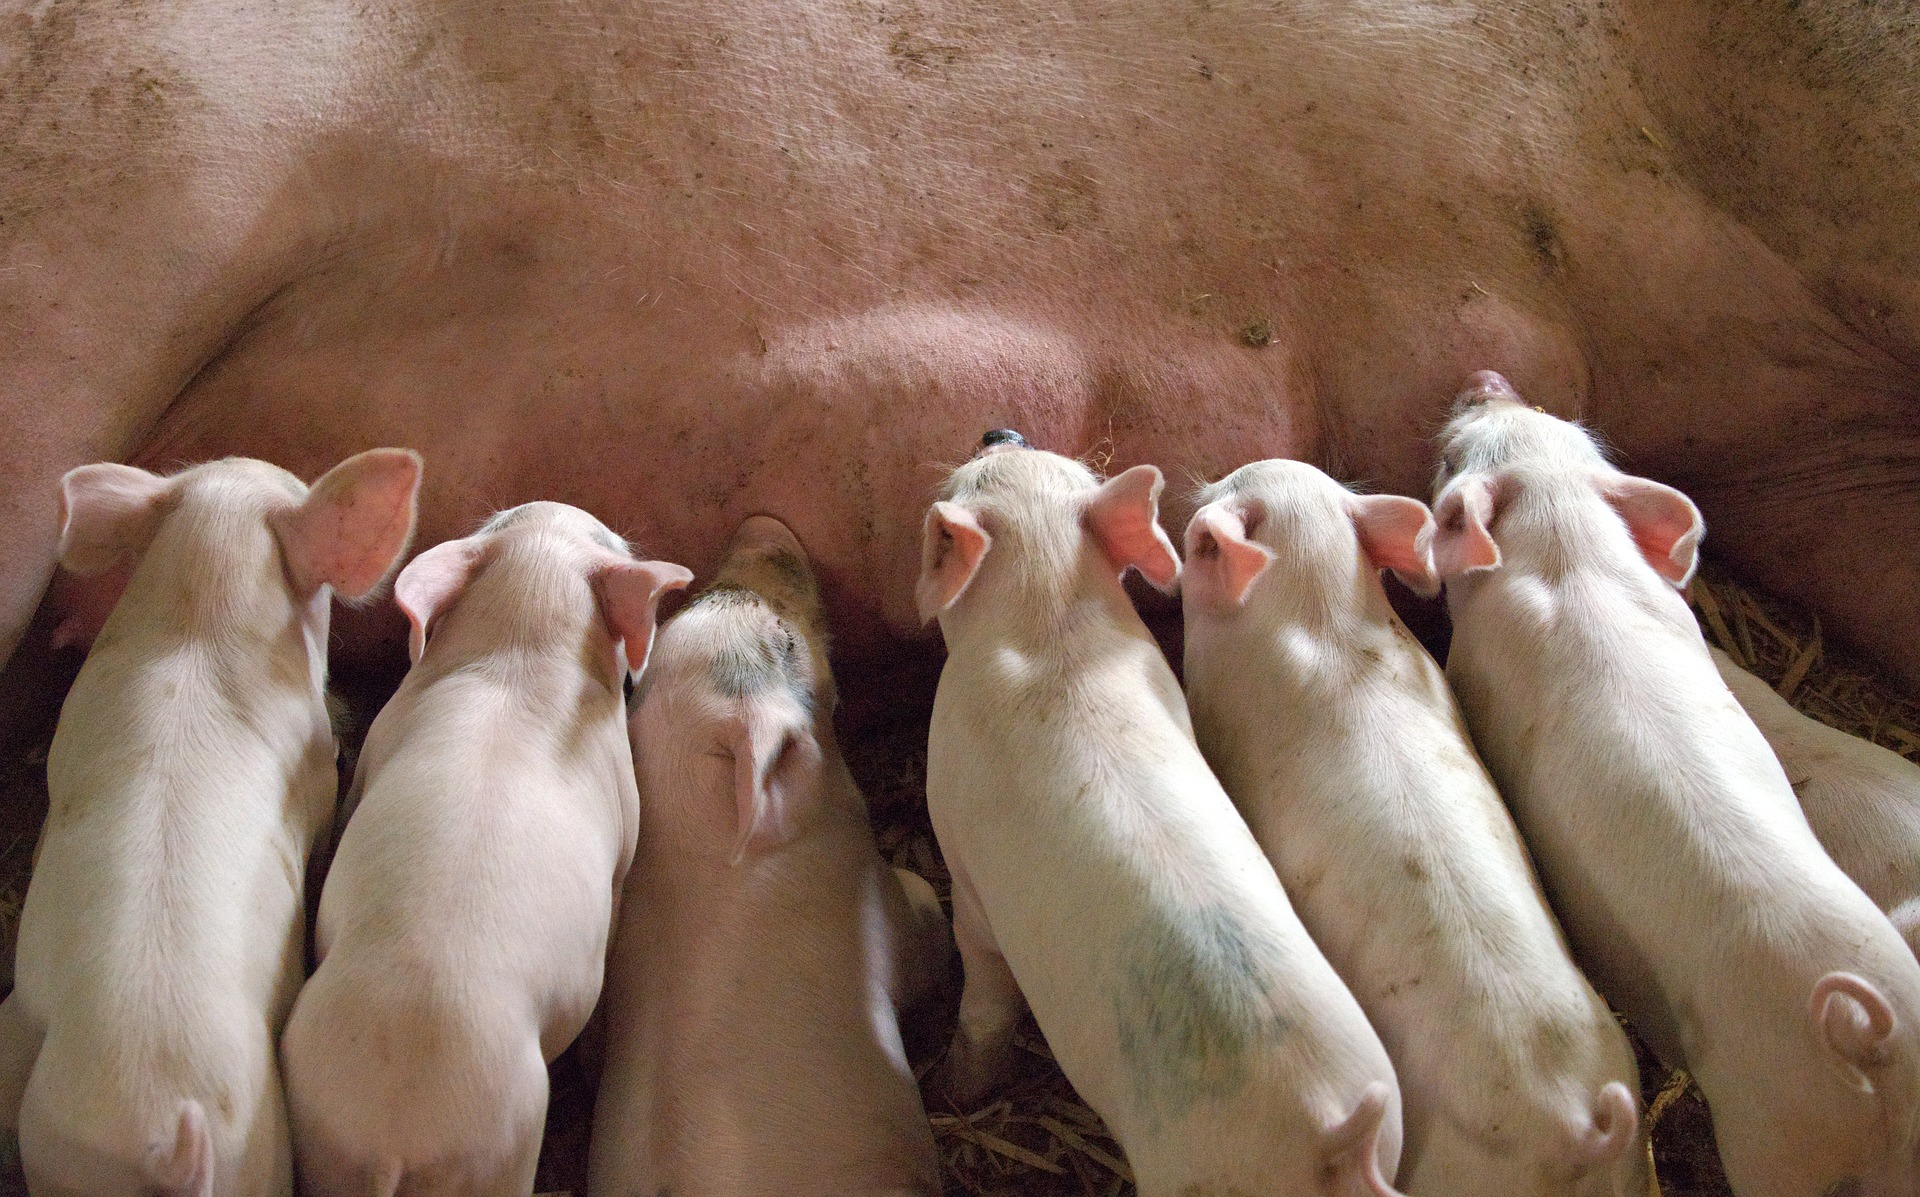 Pomoc finansowa dla hodowców świń w związku z ASF. Rolniku, sprawdź szczegóły  - Zdjęcie główne